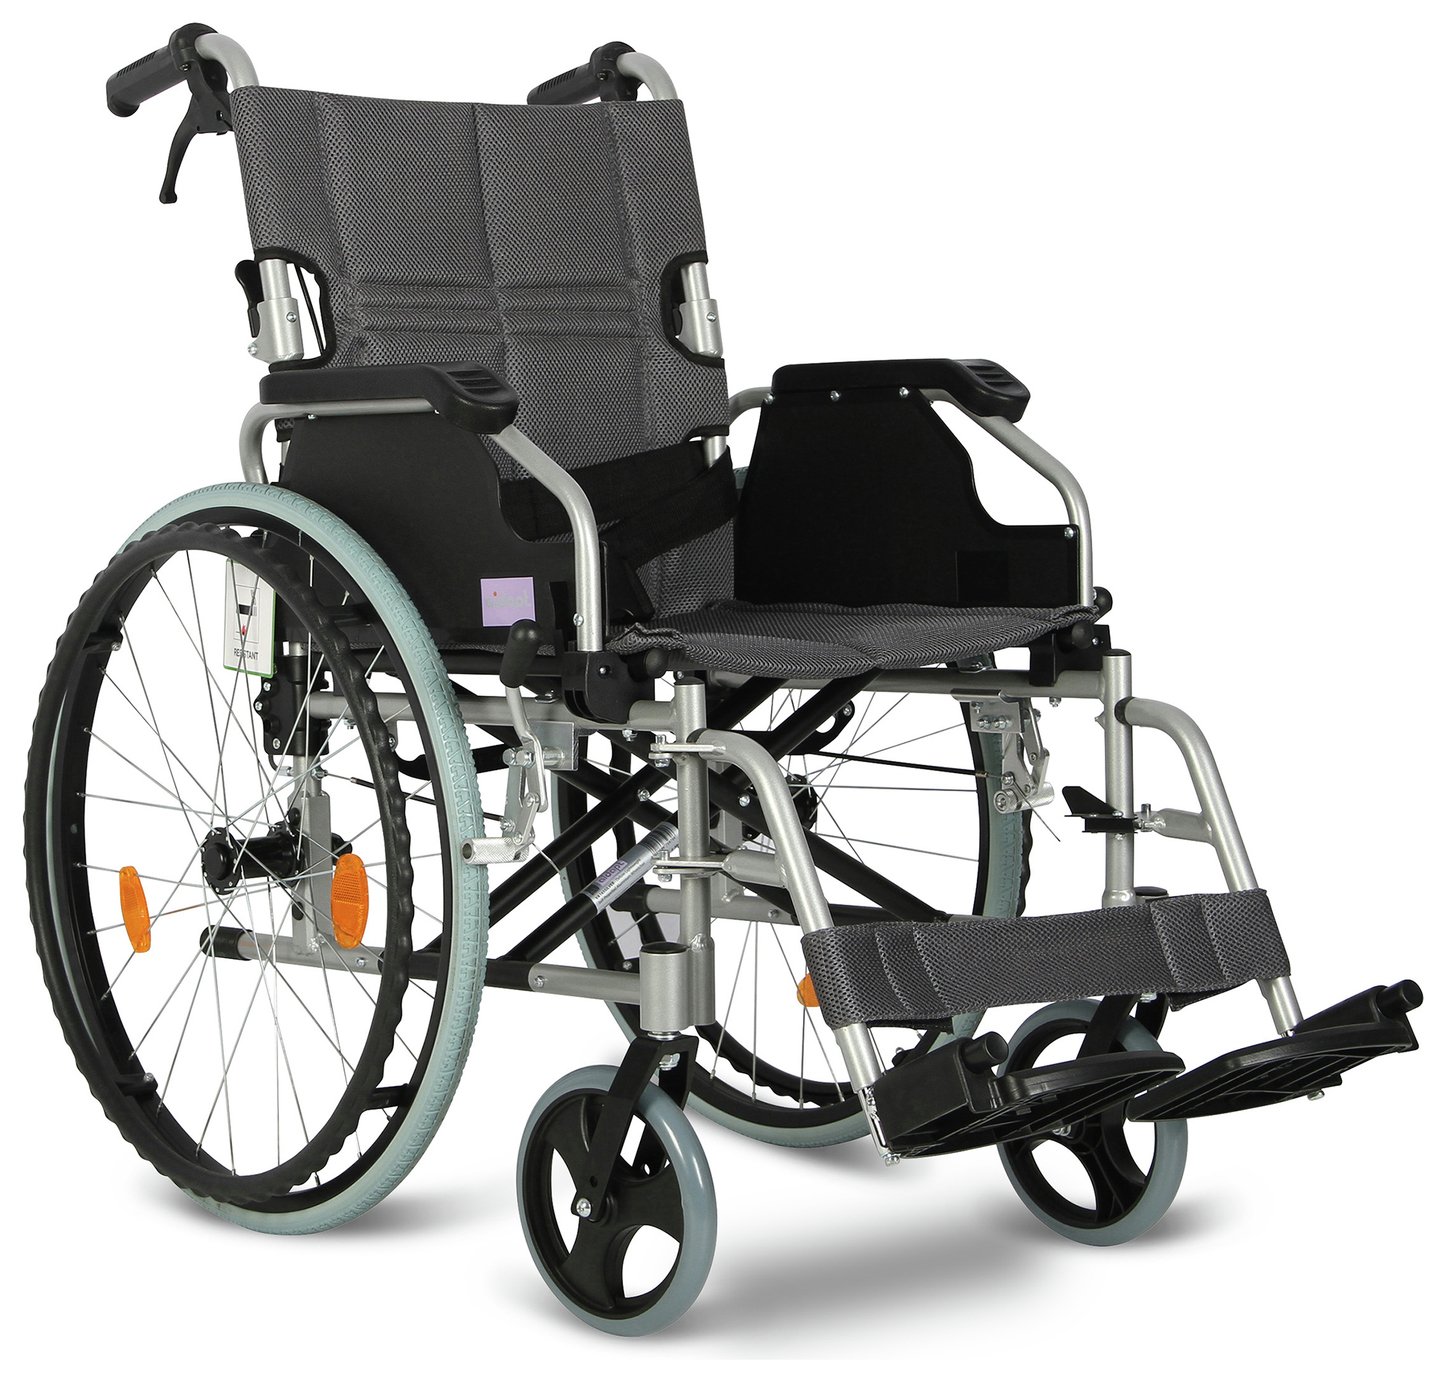 Aidapt Lightweight Aluminium Self-Propelled Wheelchair Review